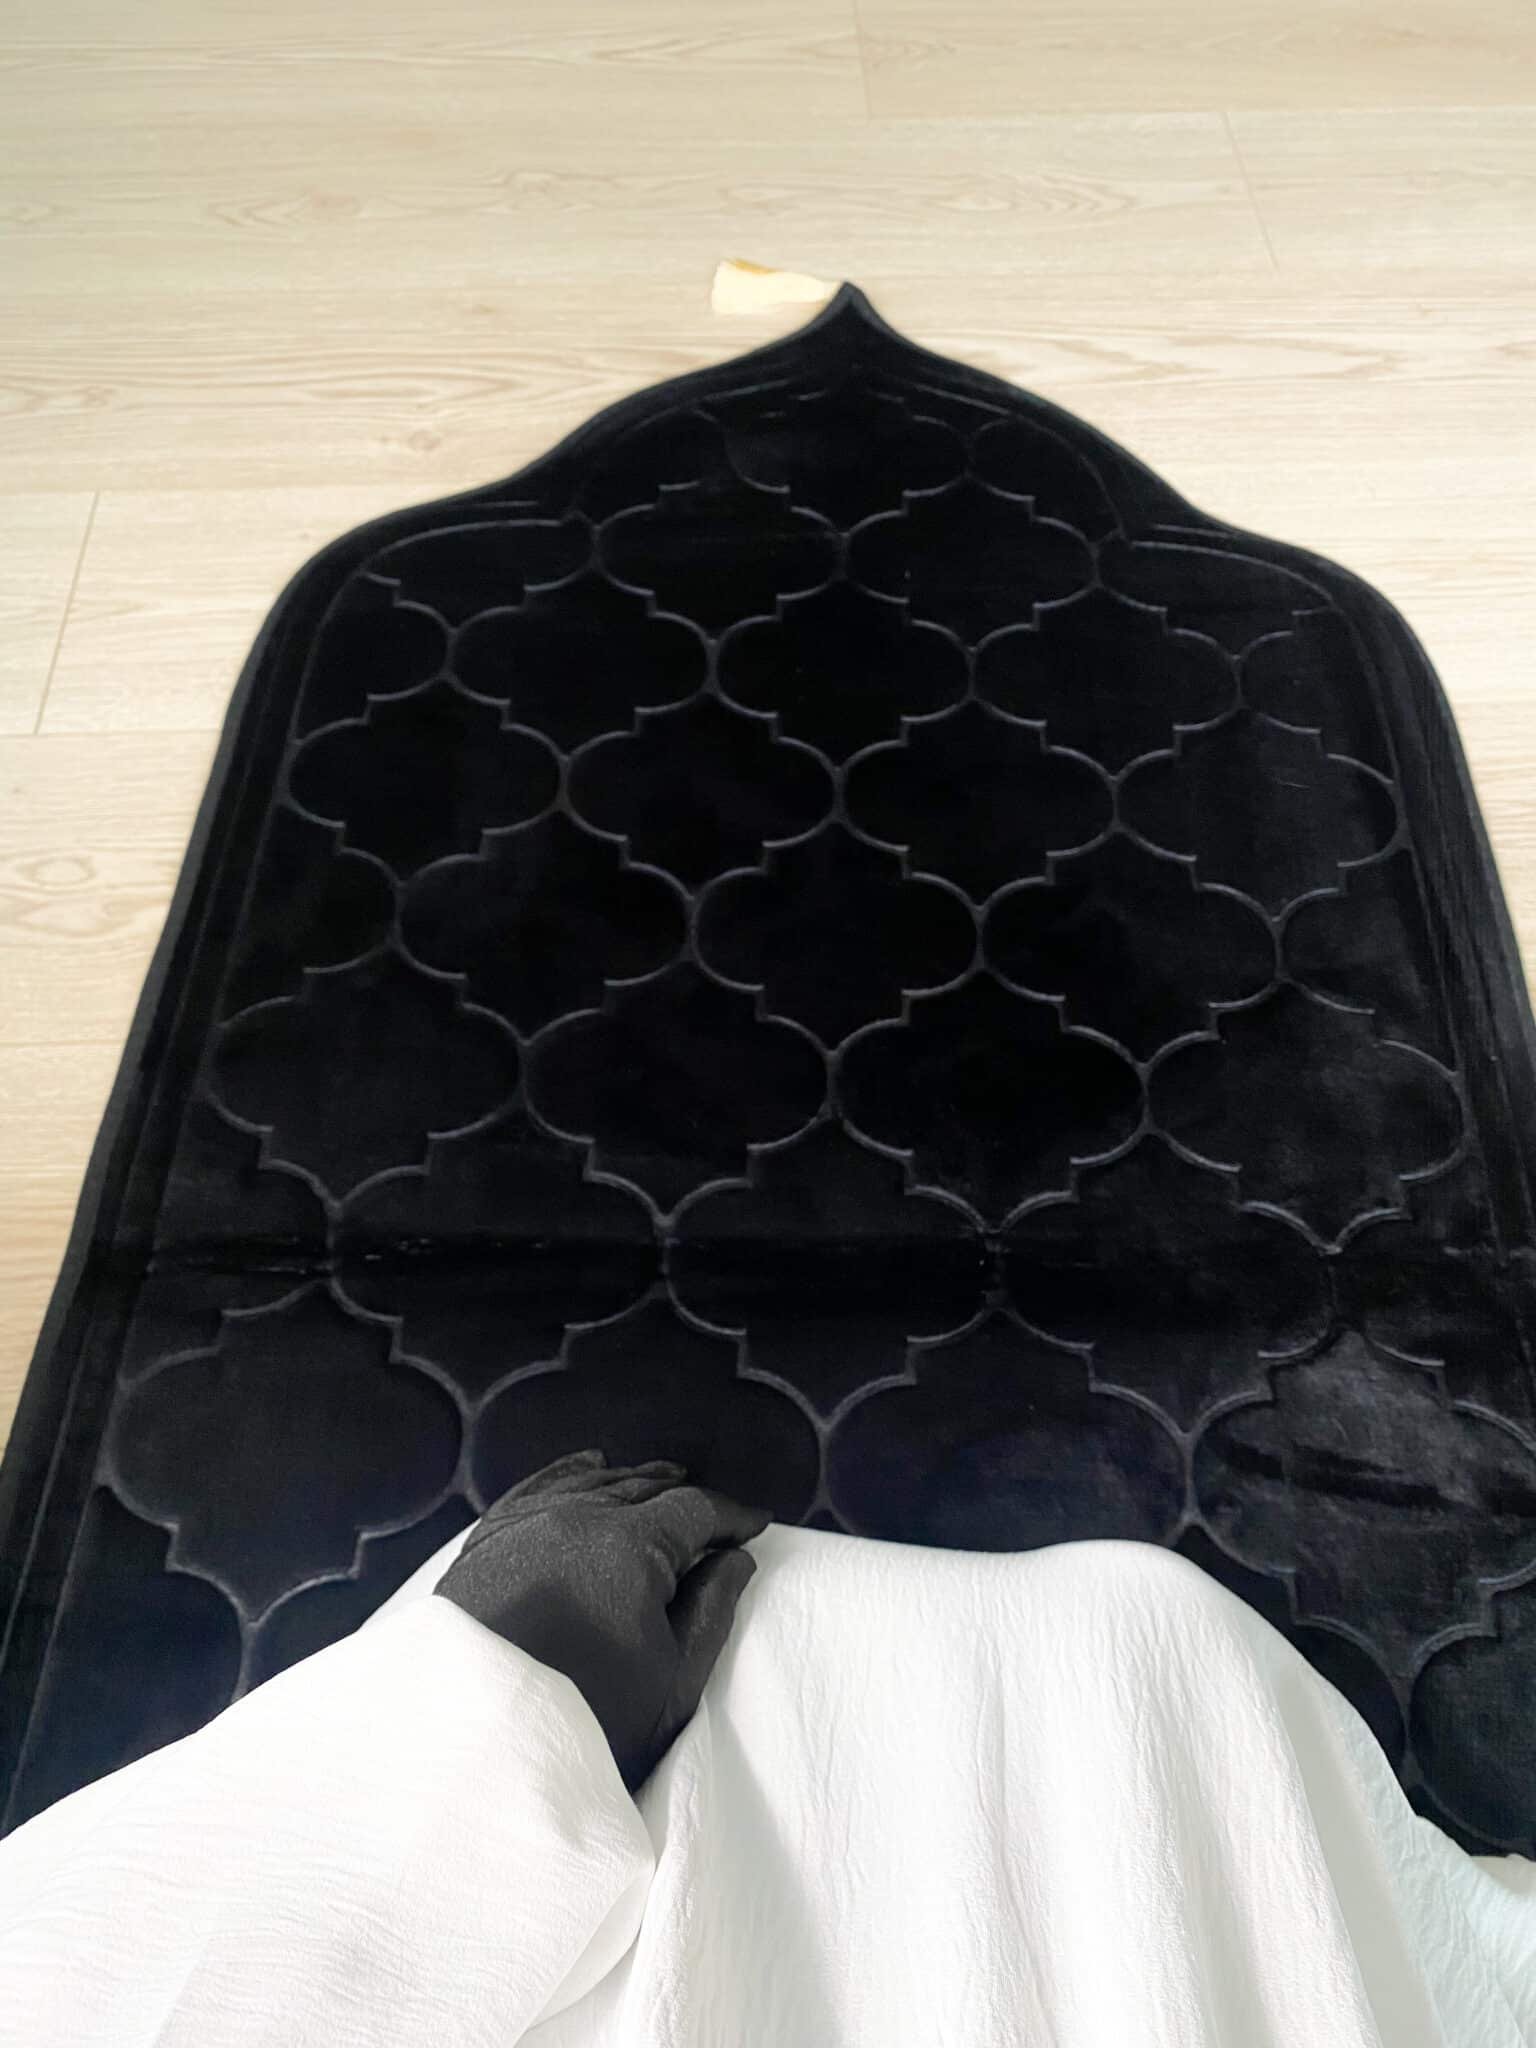 Mokia Tapis de prière musulman en coton polyester antidérapant